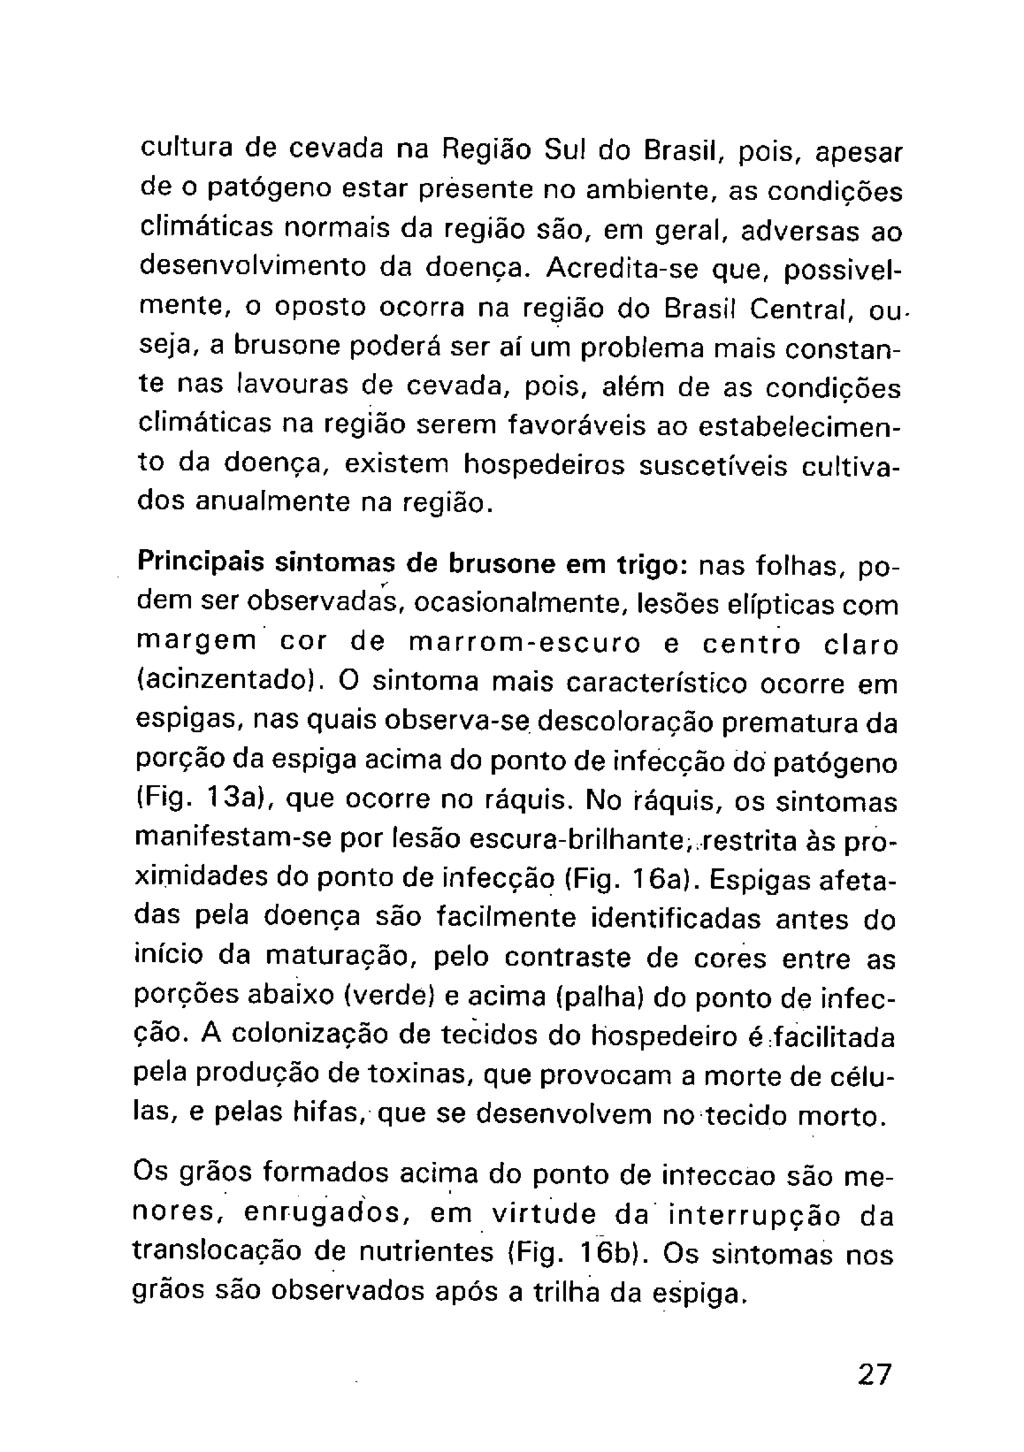 cultura de cevada na Região Sul do Brasil, pois, apesar de o patógeno estar prõsente no ambiente, as condições climáticas normais da região são, em geral, adversas ao desenvolvimento da doença.